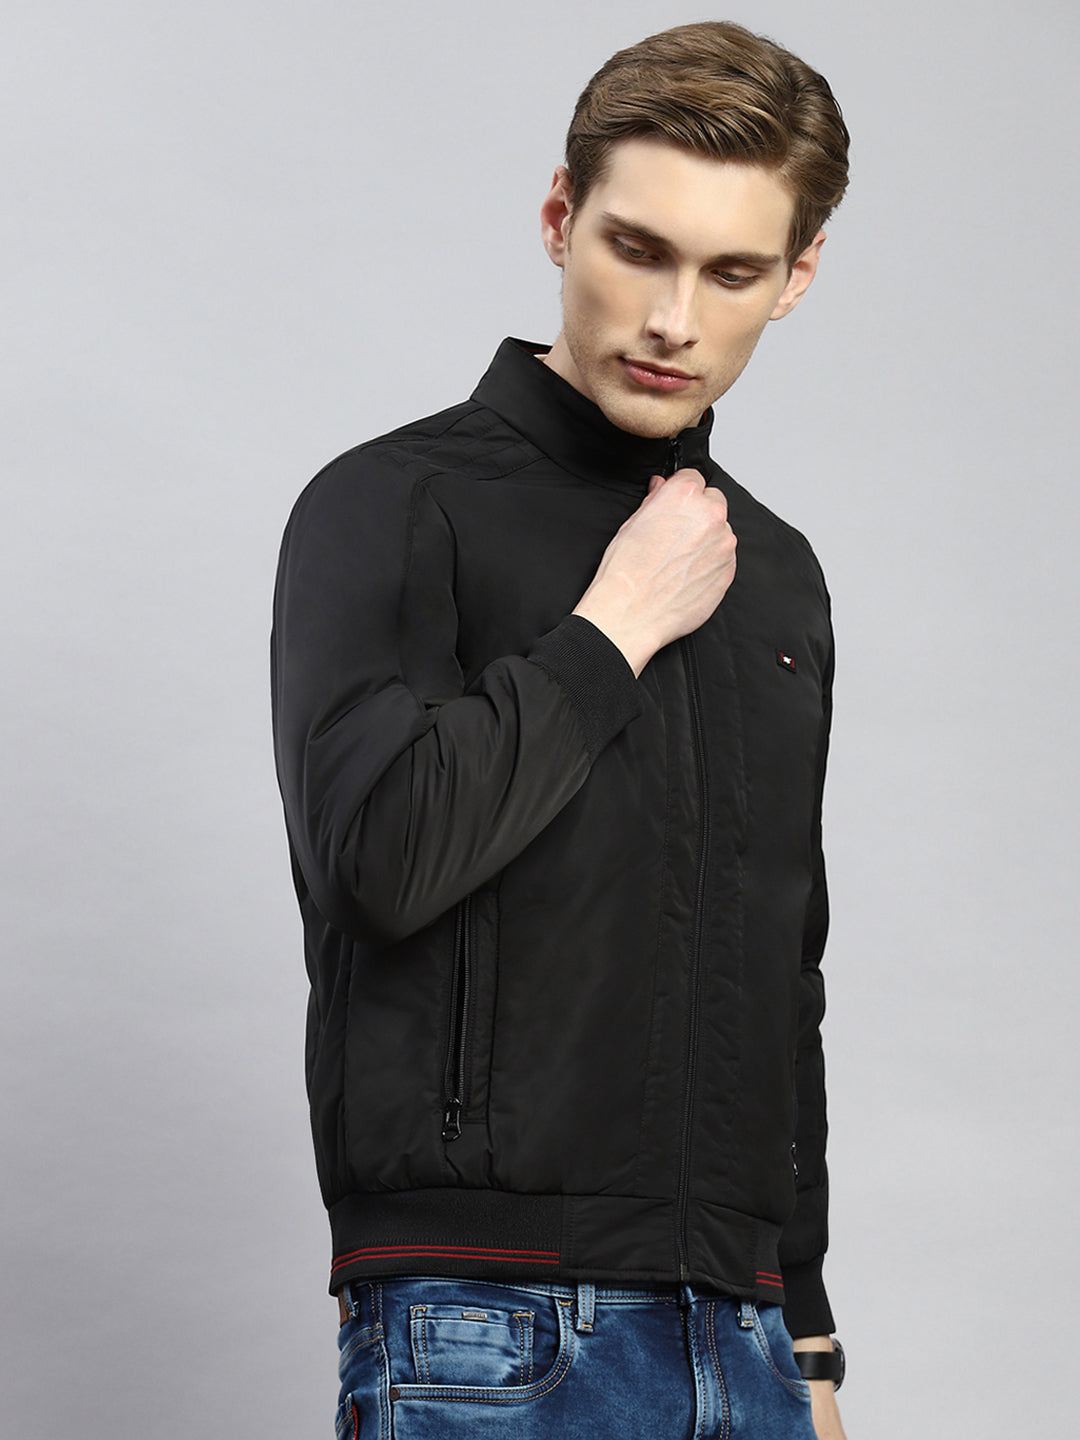 Buy Nuon Black Slim-Fit Denim Jacket from Westside